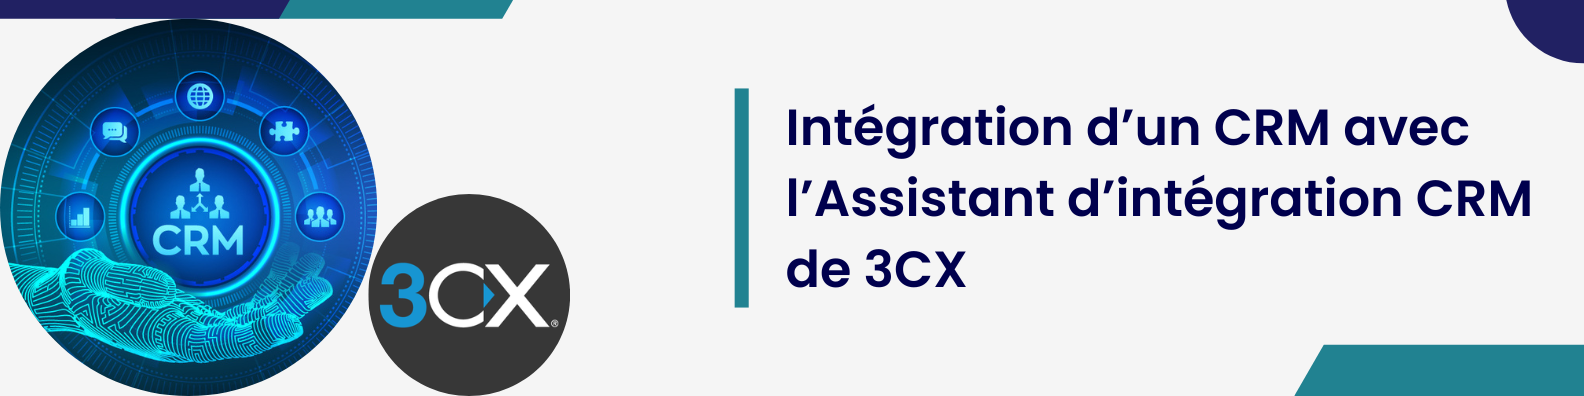 Intégration d’un CRM avec l’Assistant d’intégration CRM de 3CX